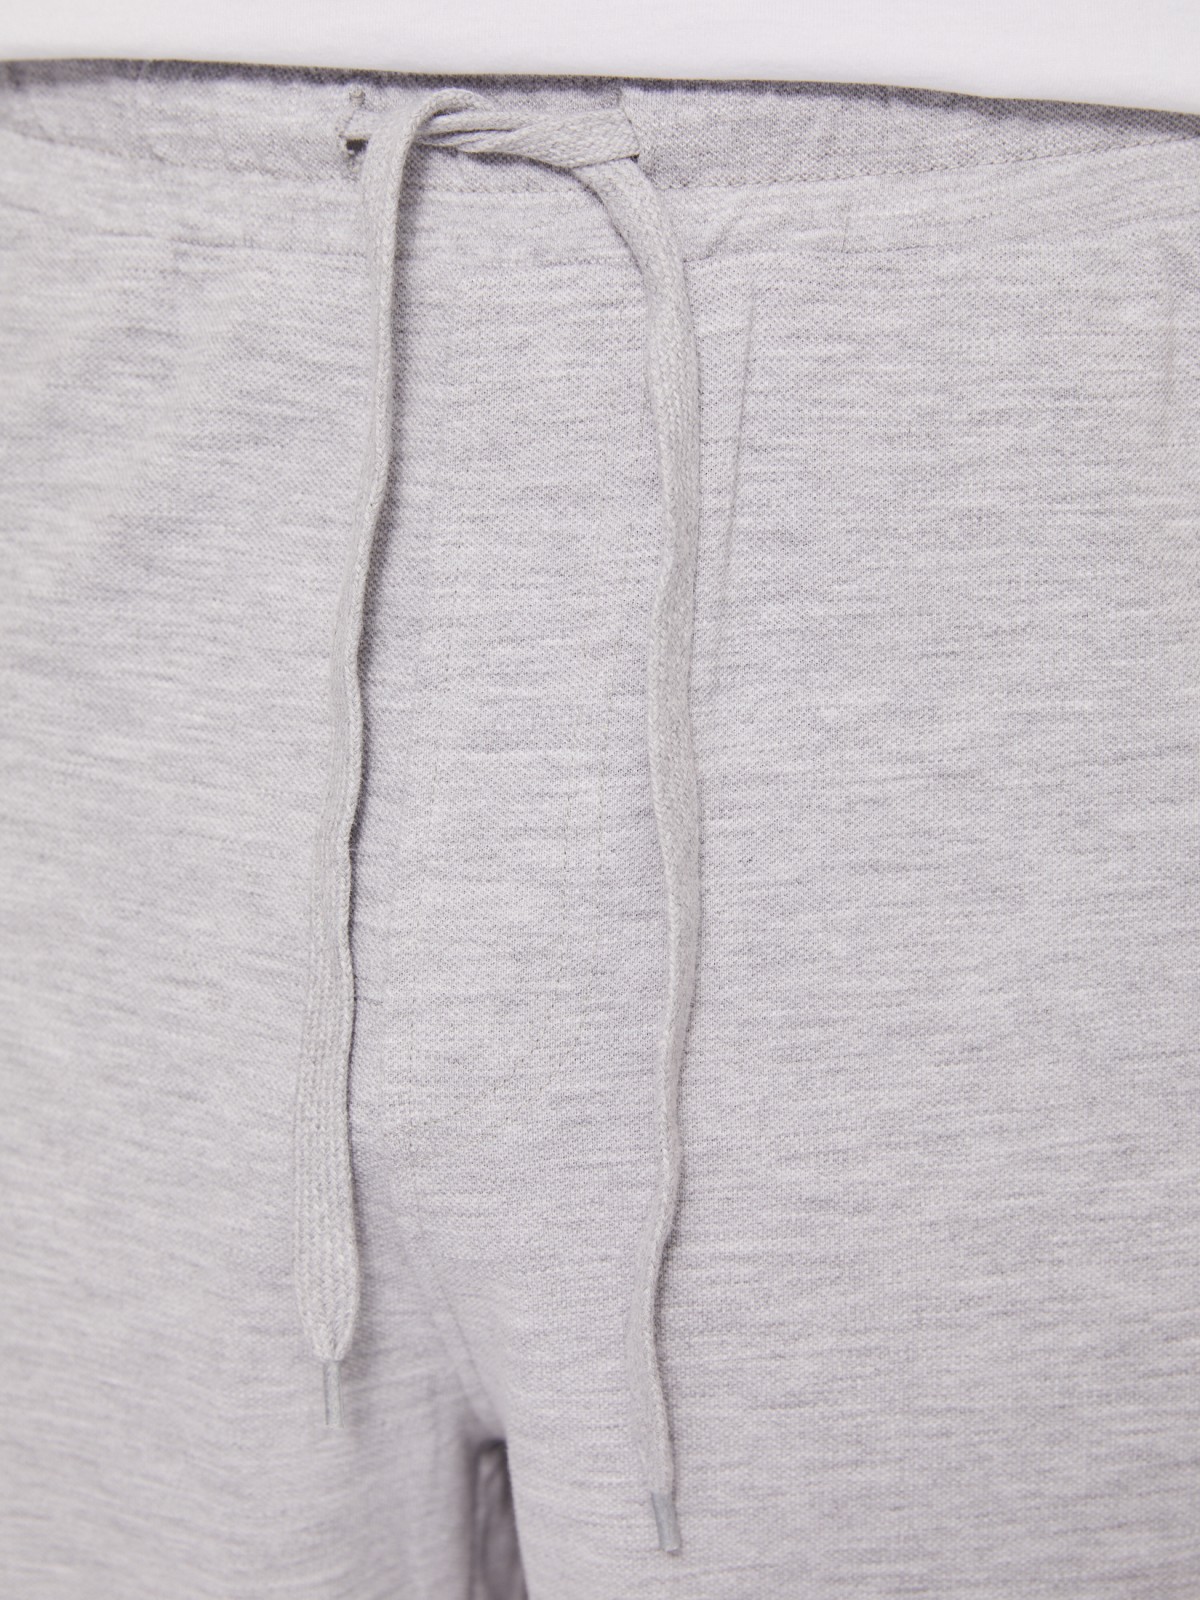 Трикотажные шорты на резинке zolla 014237J75032, цвет серый, размер S - фото 4